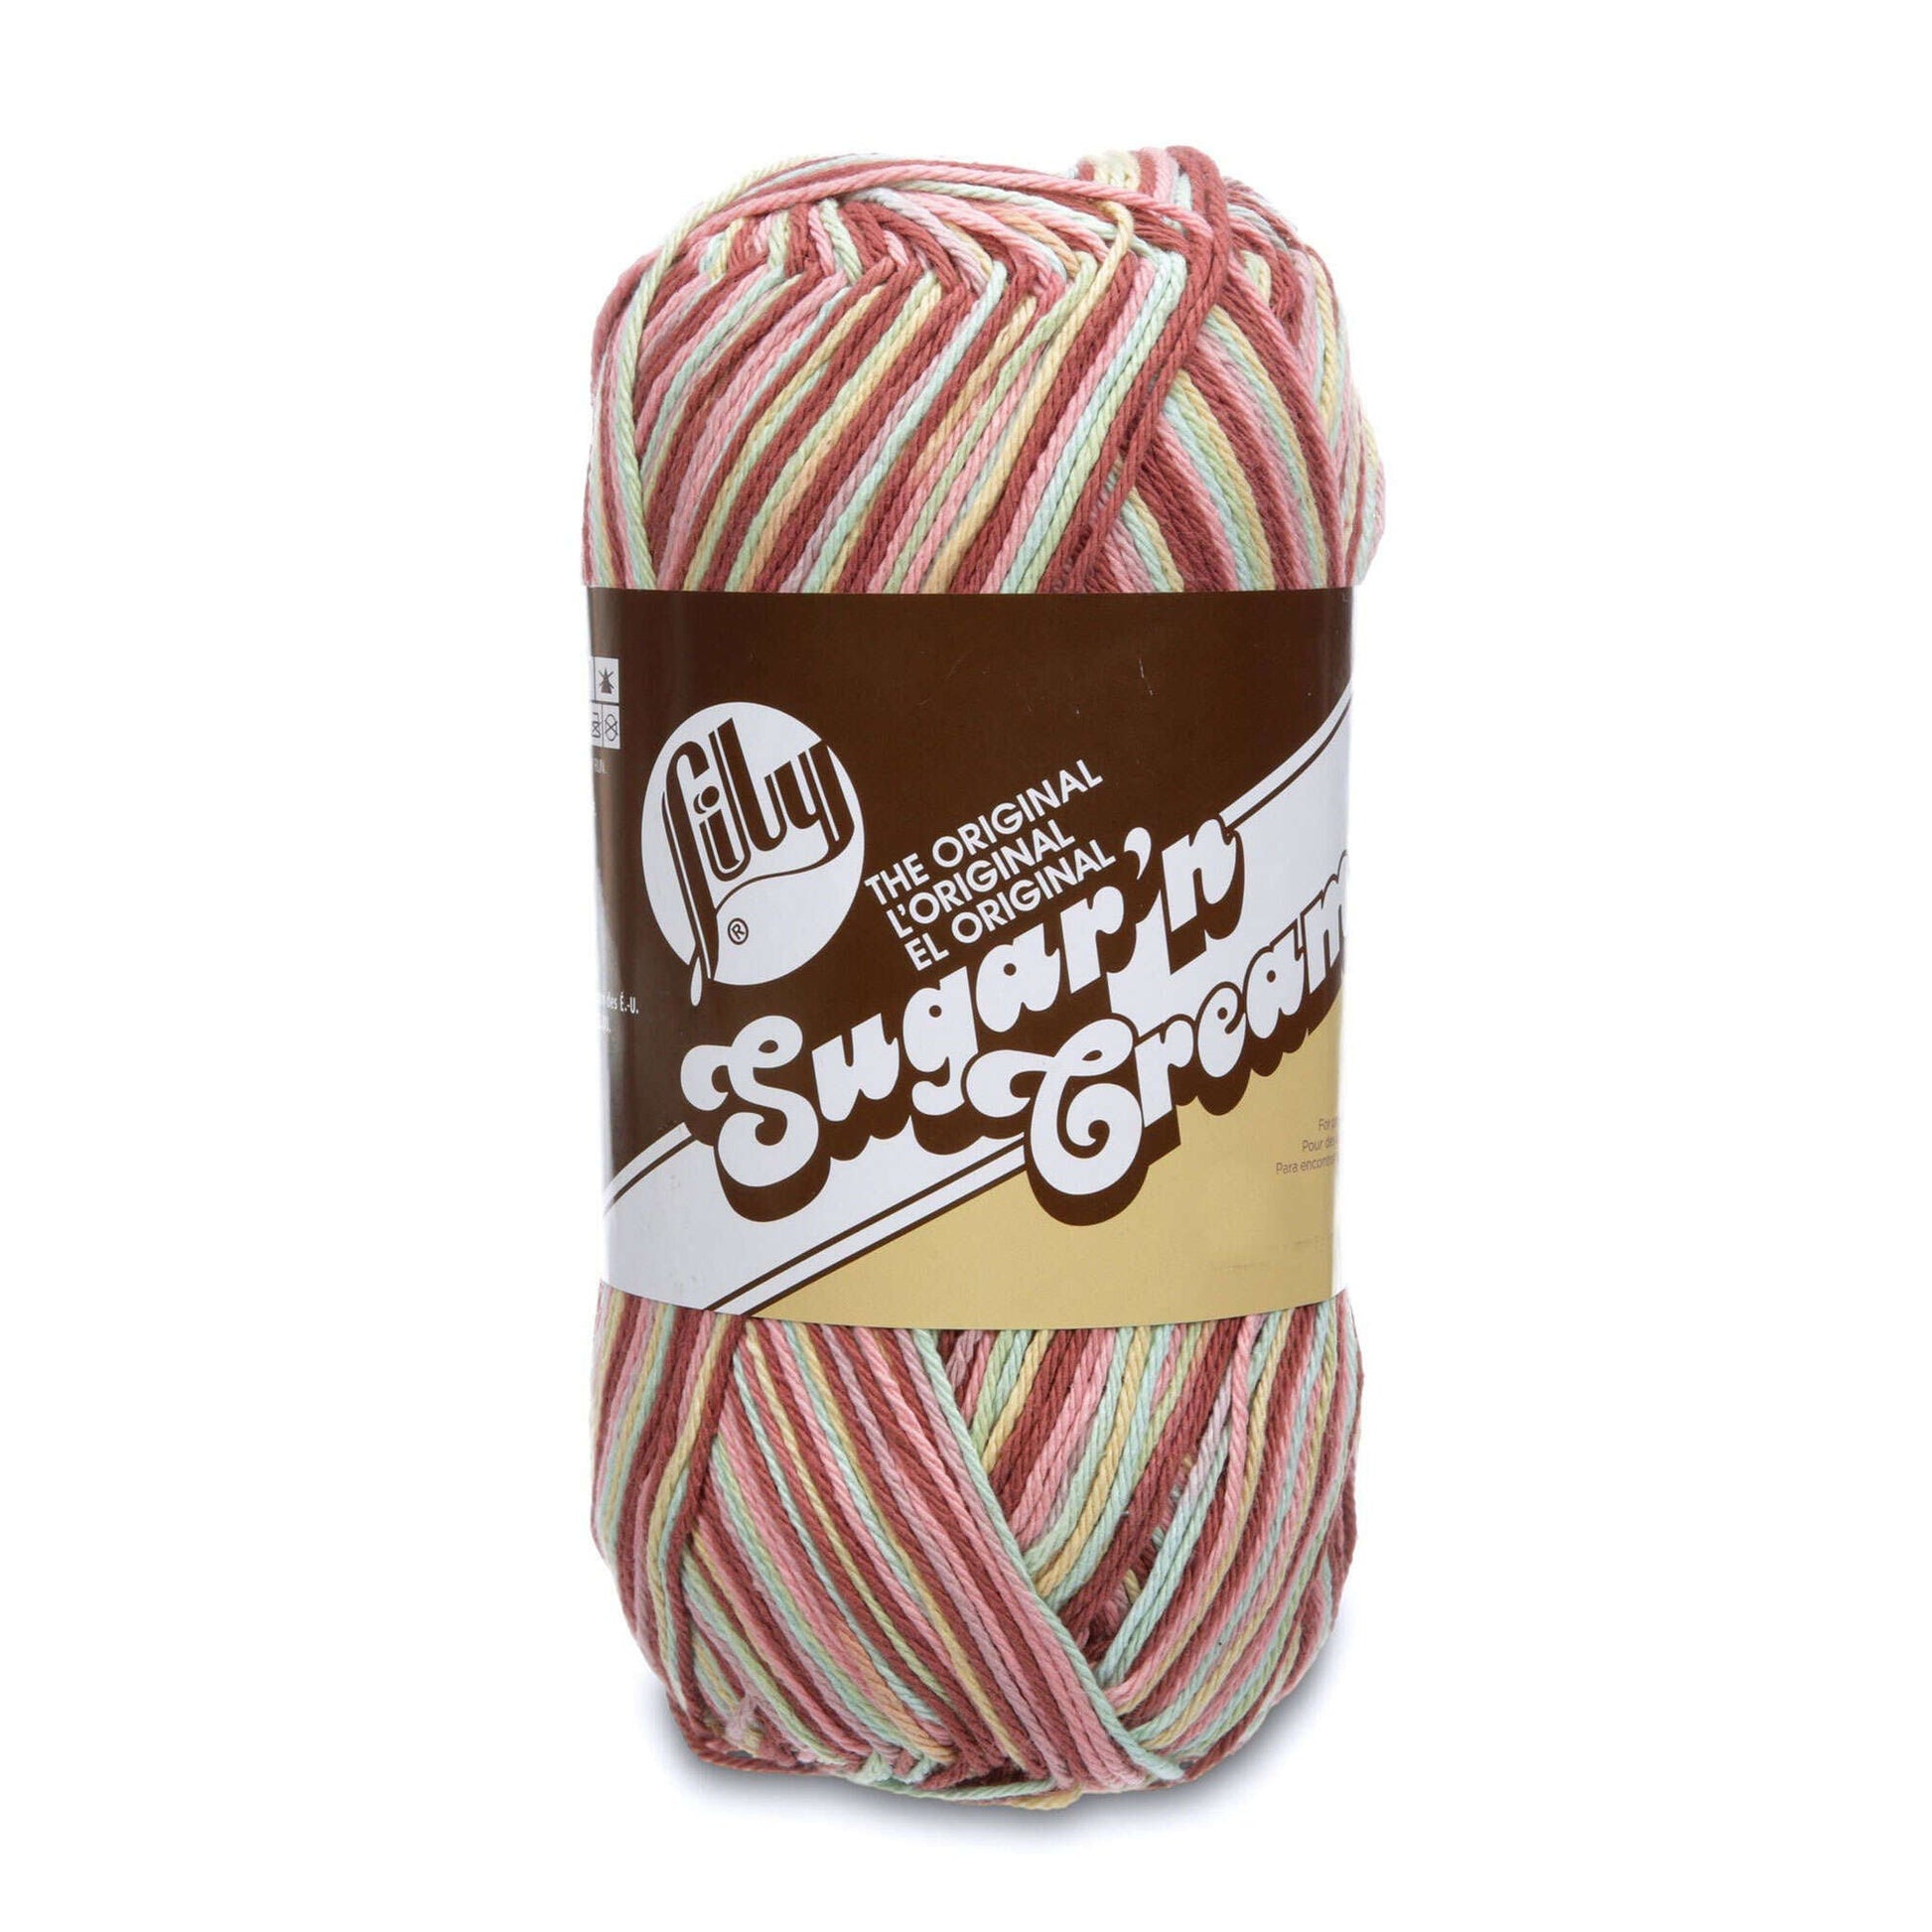 Lily Sugar'n Cream Big Ball Ombres Yarn (340g/12oz)